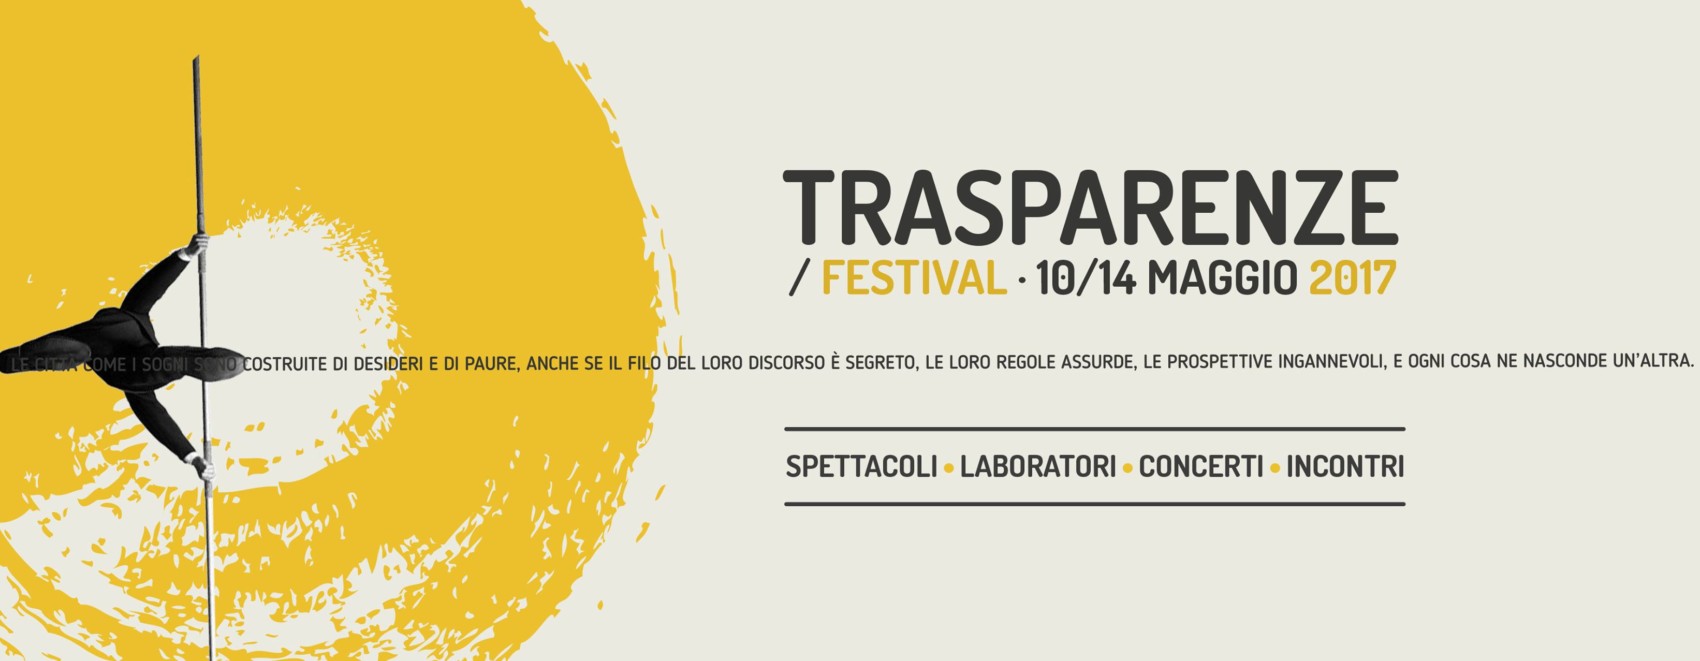 Trasparenze Festival 2017